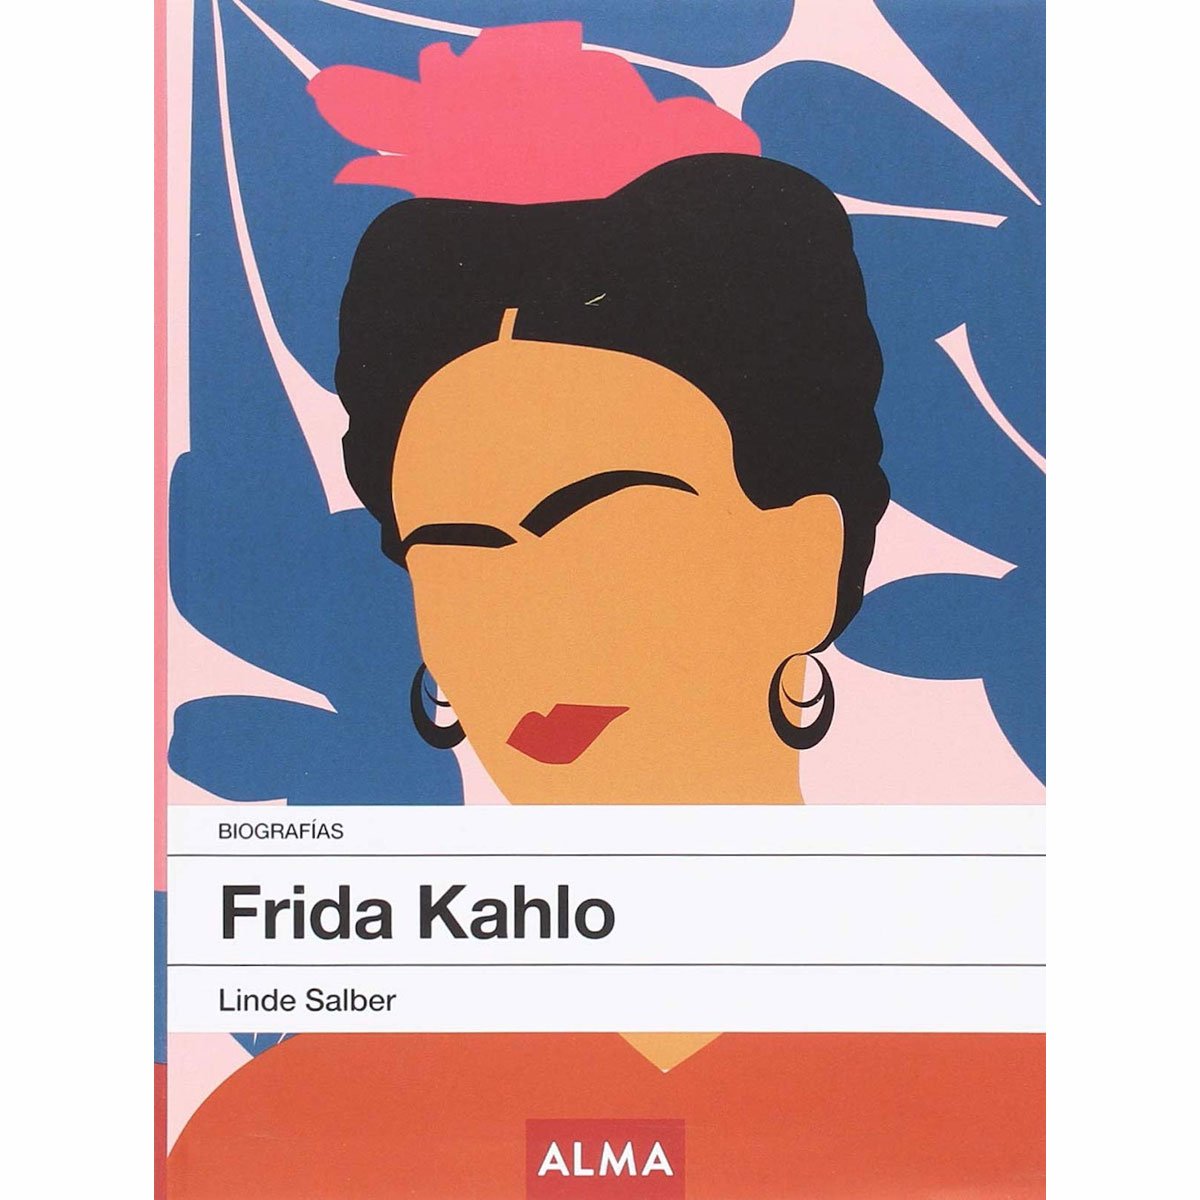 Frida Kahlo Biografía Alma